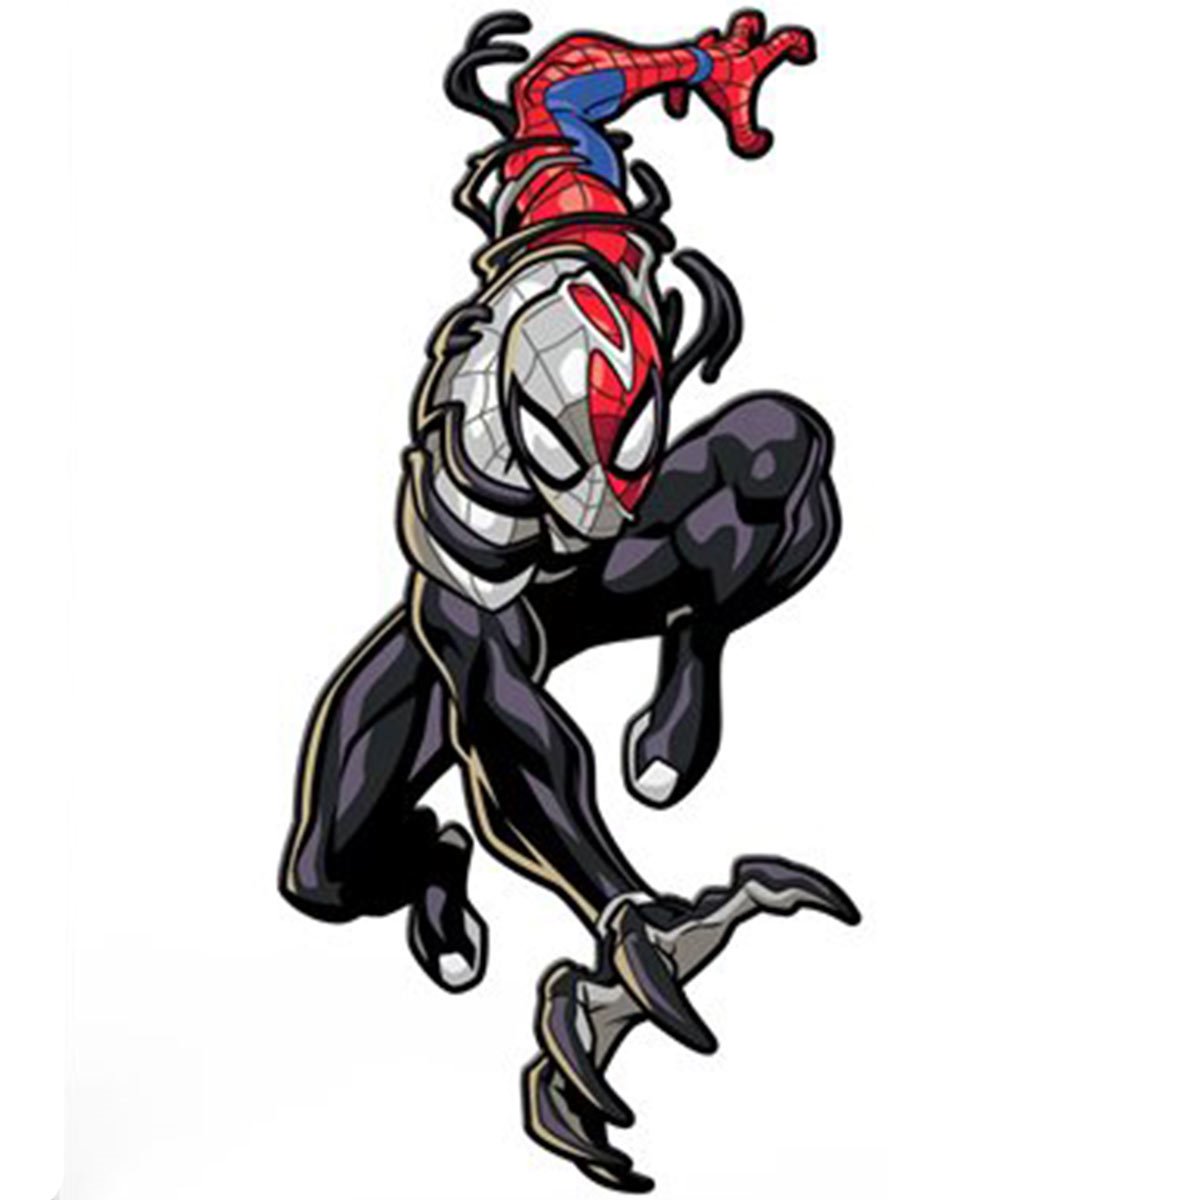 Spider-Man Maximum Venom Venomized Spider-Man FiGPiN Classic